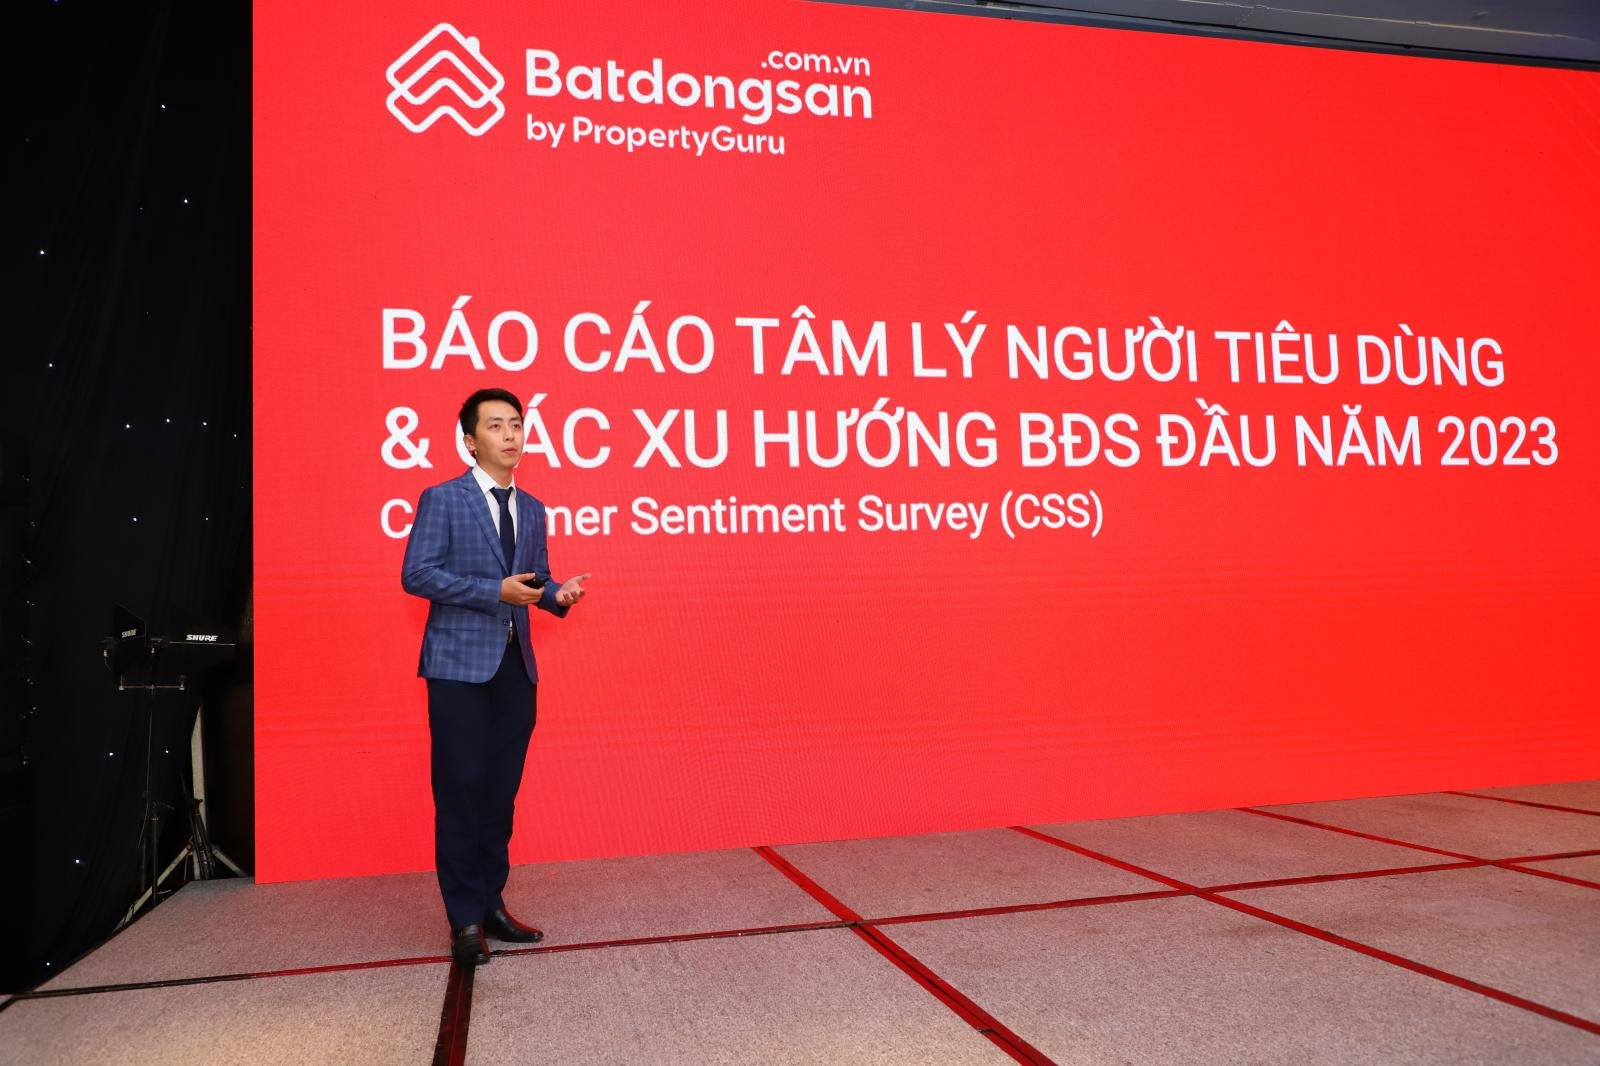 &quot;Kỳ lân&quot; sở hữu Batdongsan.com gặp khó tại Việt Nam, doanh thu quý 1 giảm 34% - Ảnh 1.